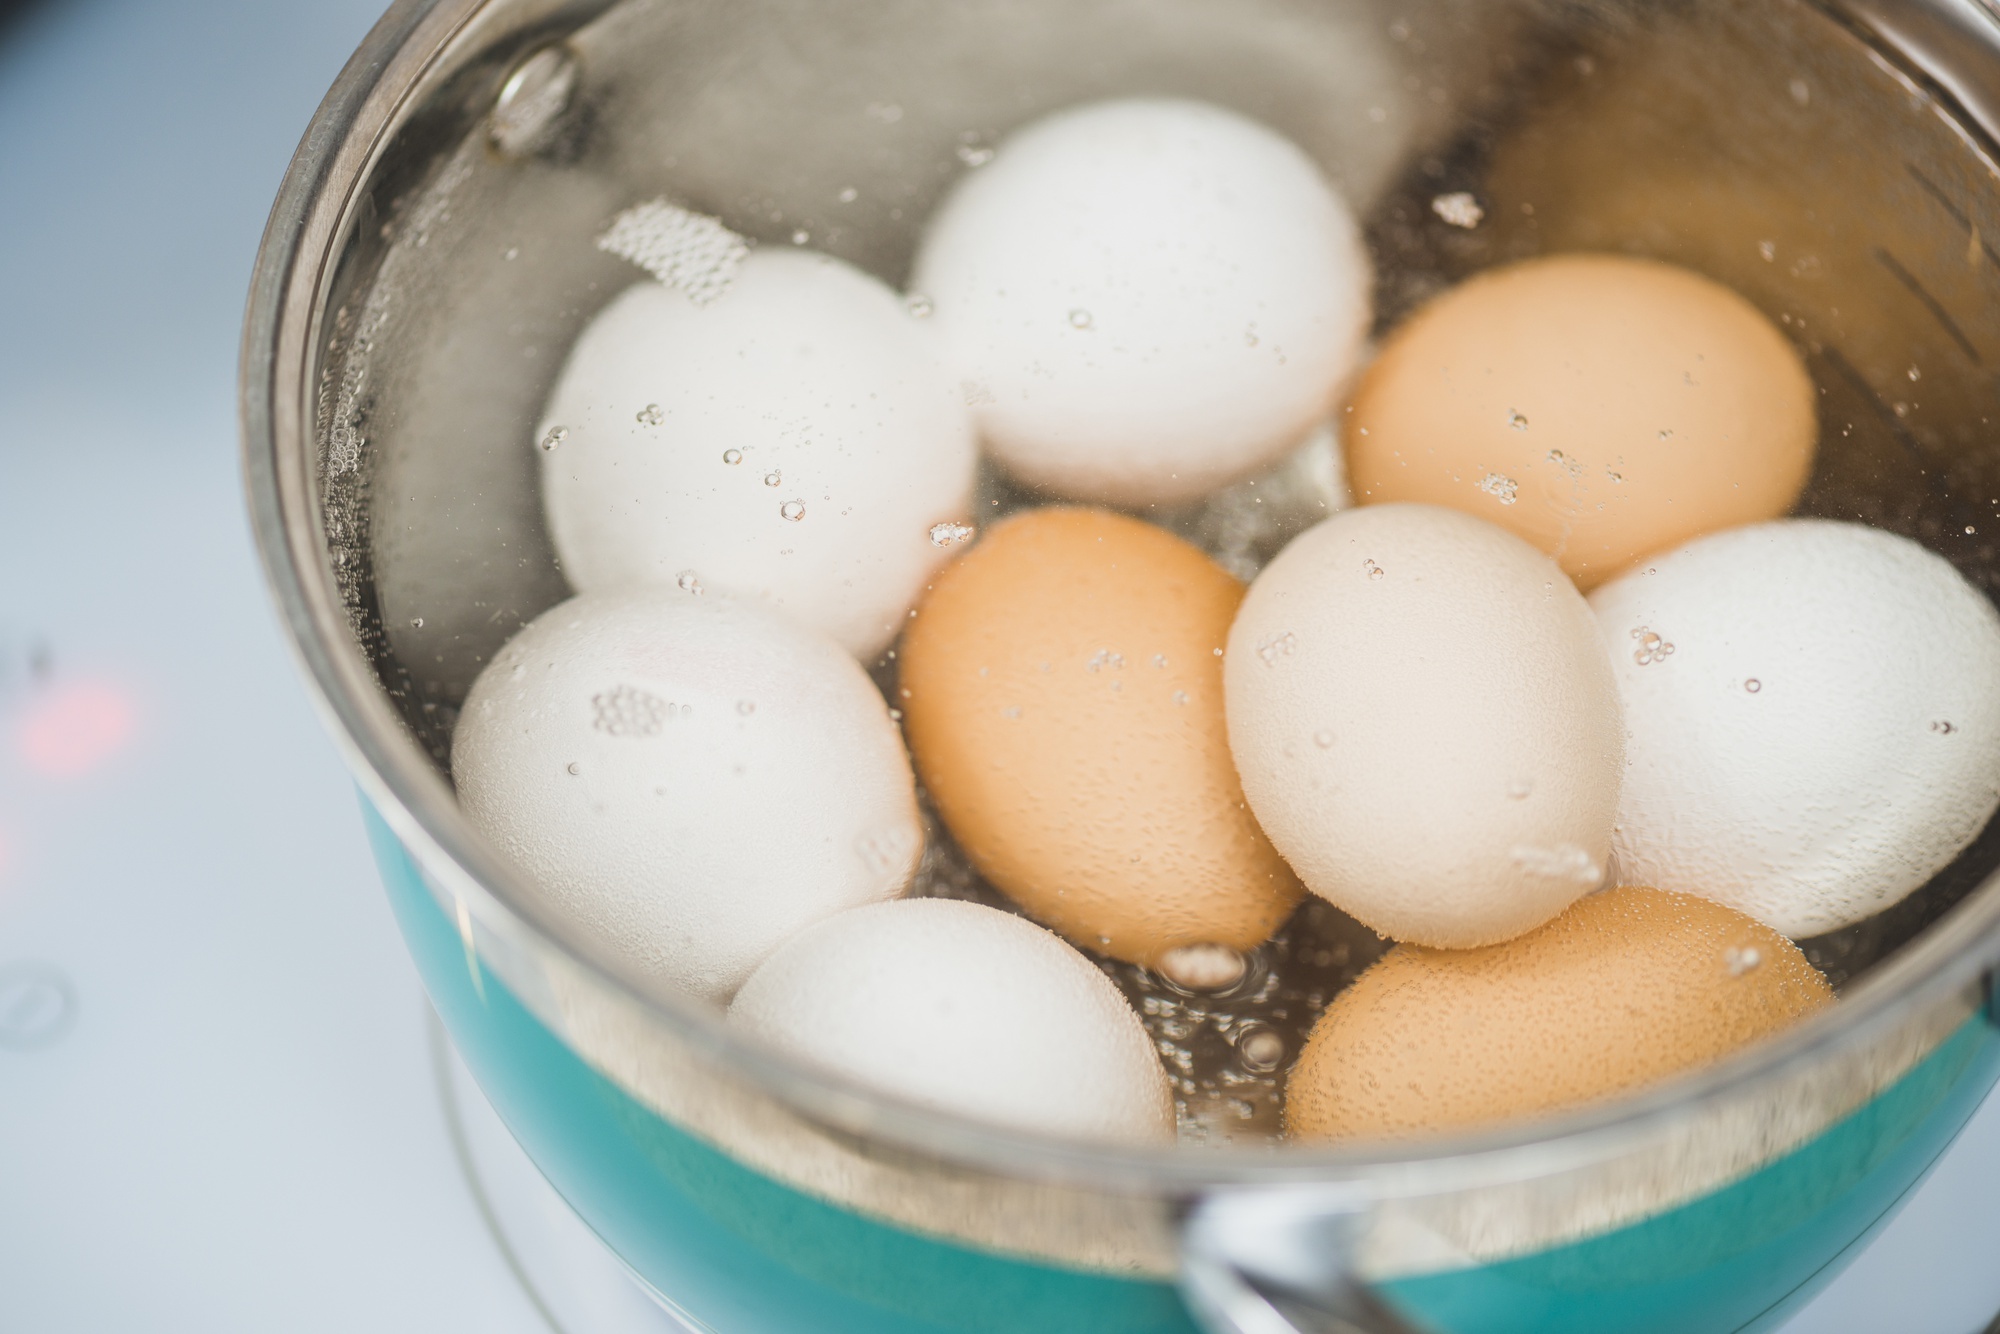 چند عدد تخم مرغ در روز بخوریم ؟ | معجزه خوردن تخم مرغ برای سلامت بدن | ارزش غذایی یک تخم مرغ آبپز